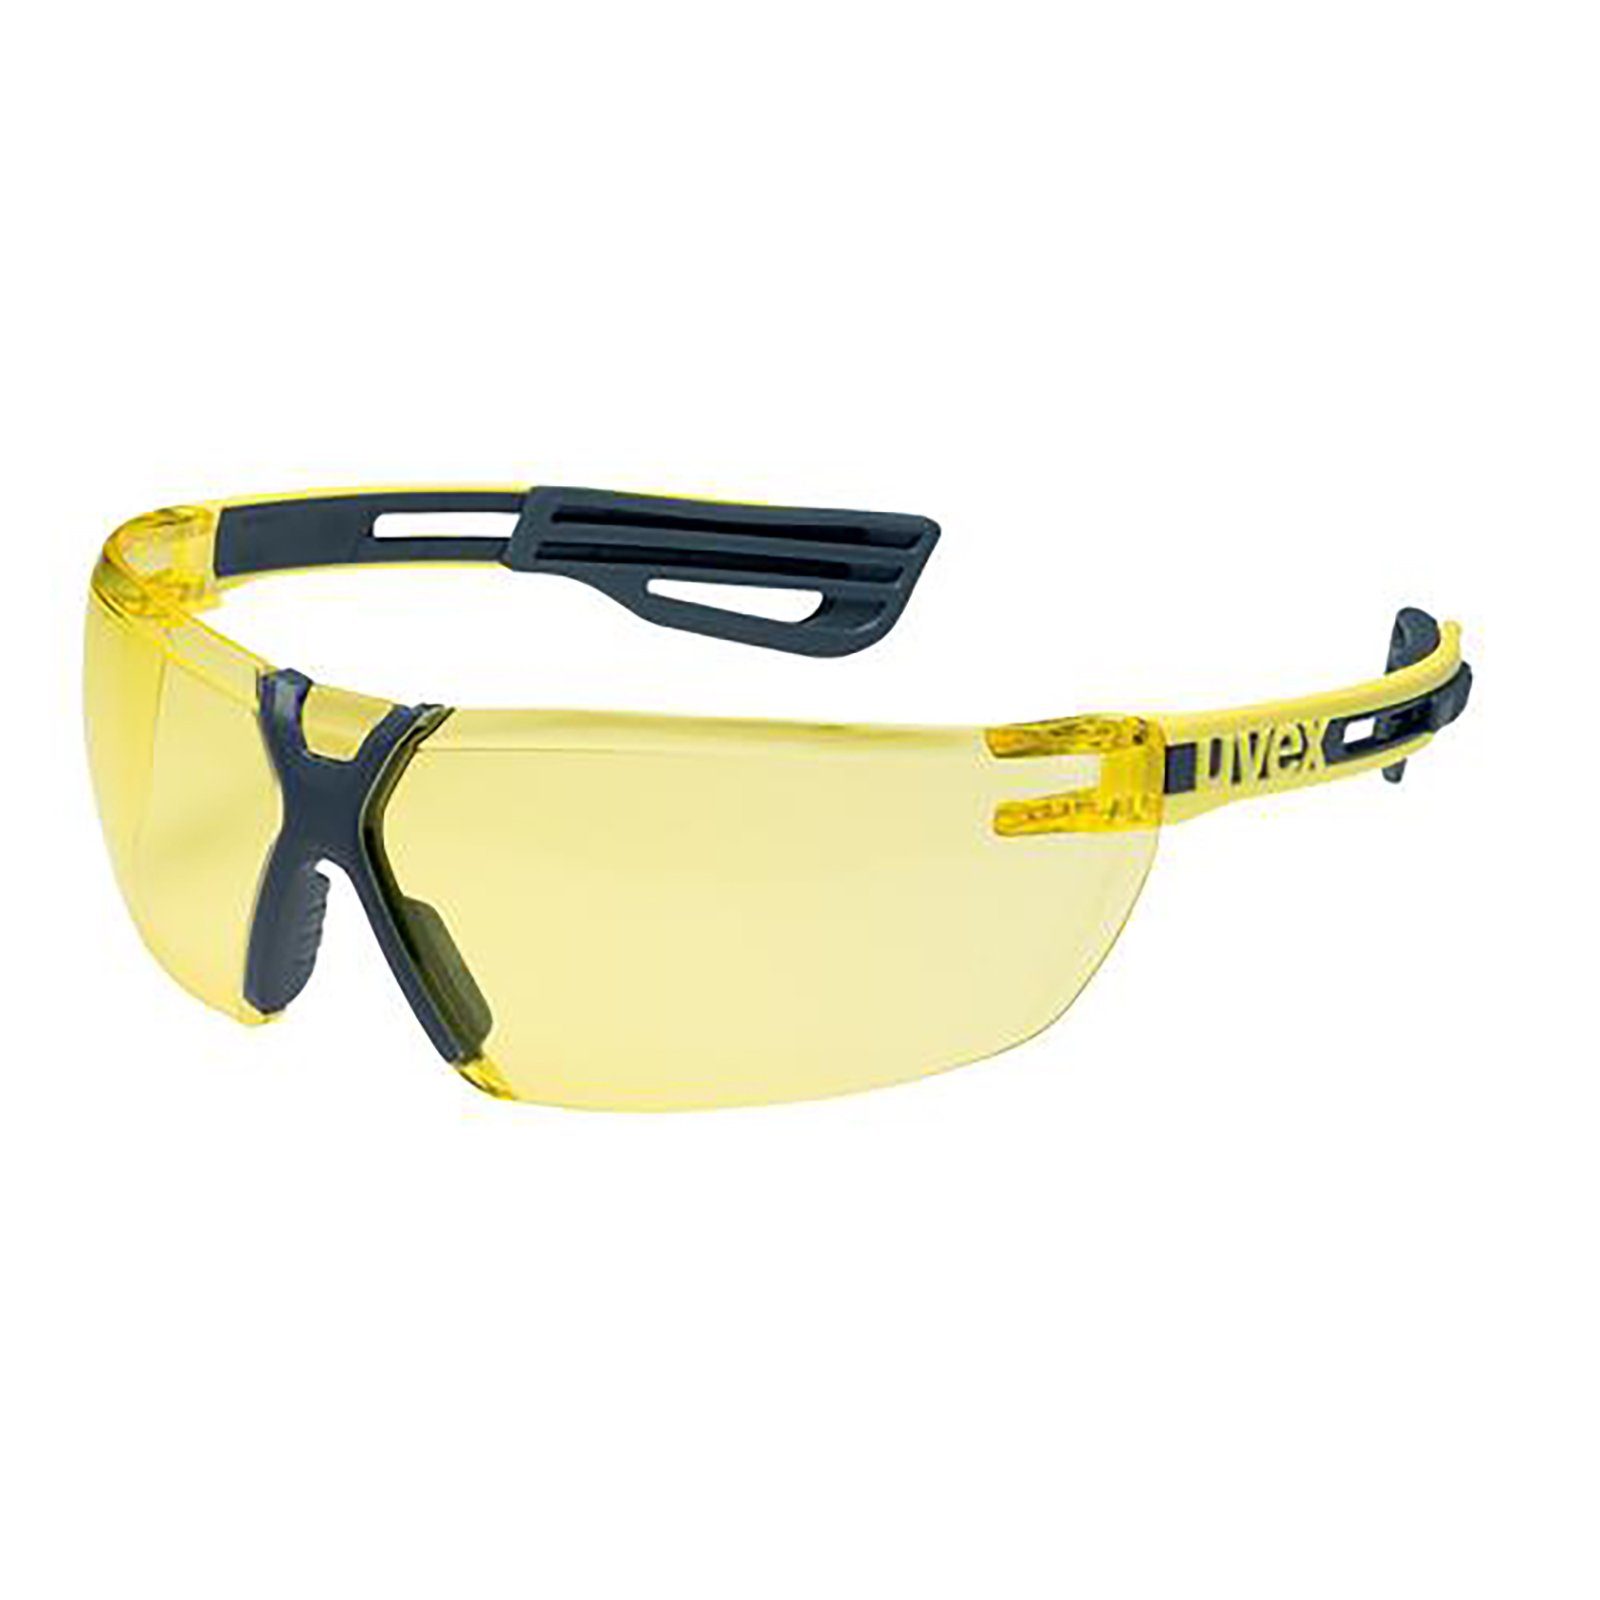 Arbeitsschutzbrille 9199240 x-fit pro sv amber Bügelbrille Uvex exc.